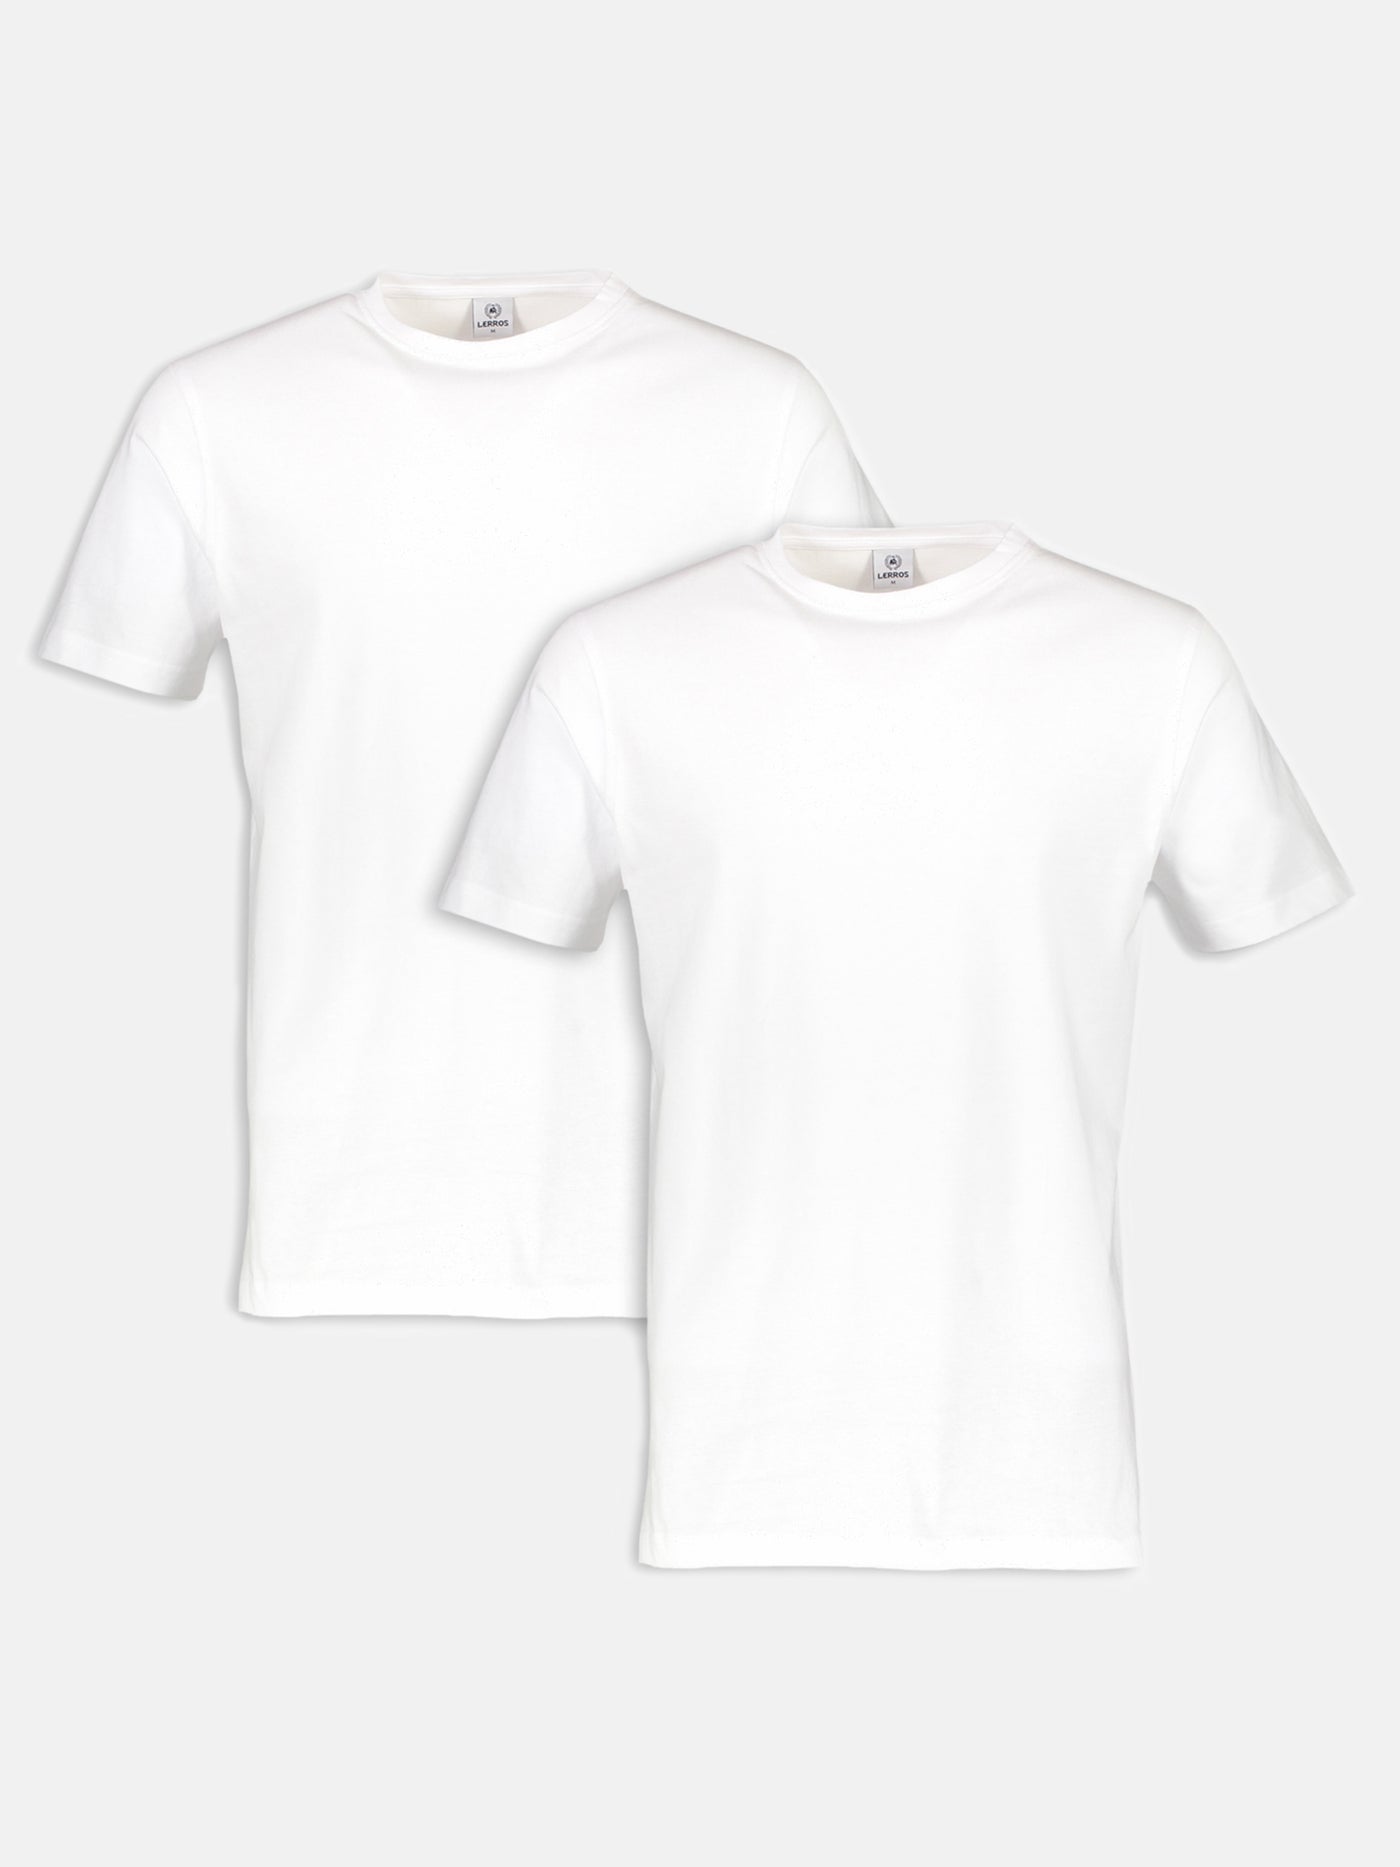 Rundhals Doppelpack T-Shirt in Premium Baumwollqualität